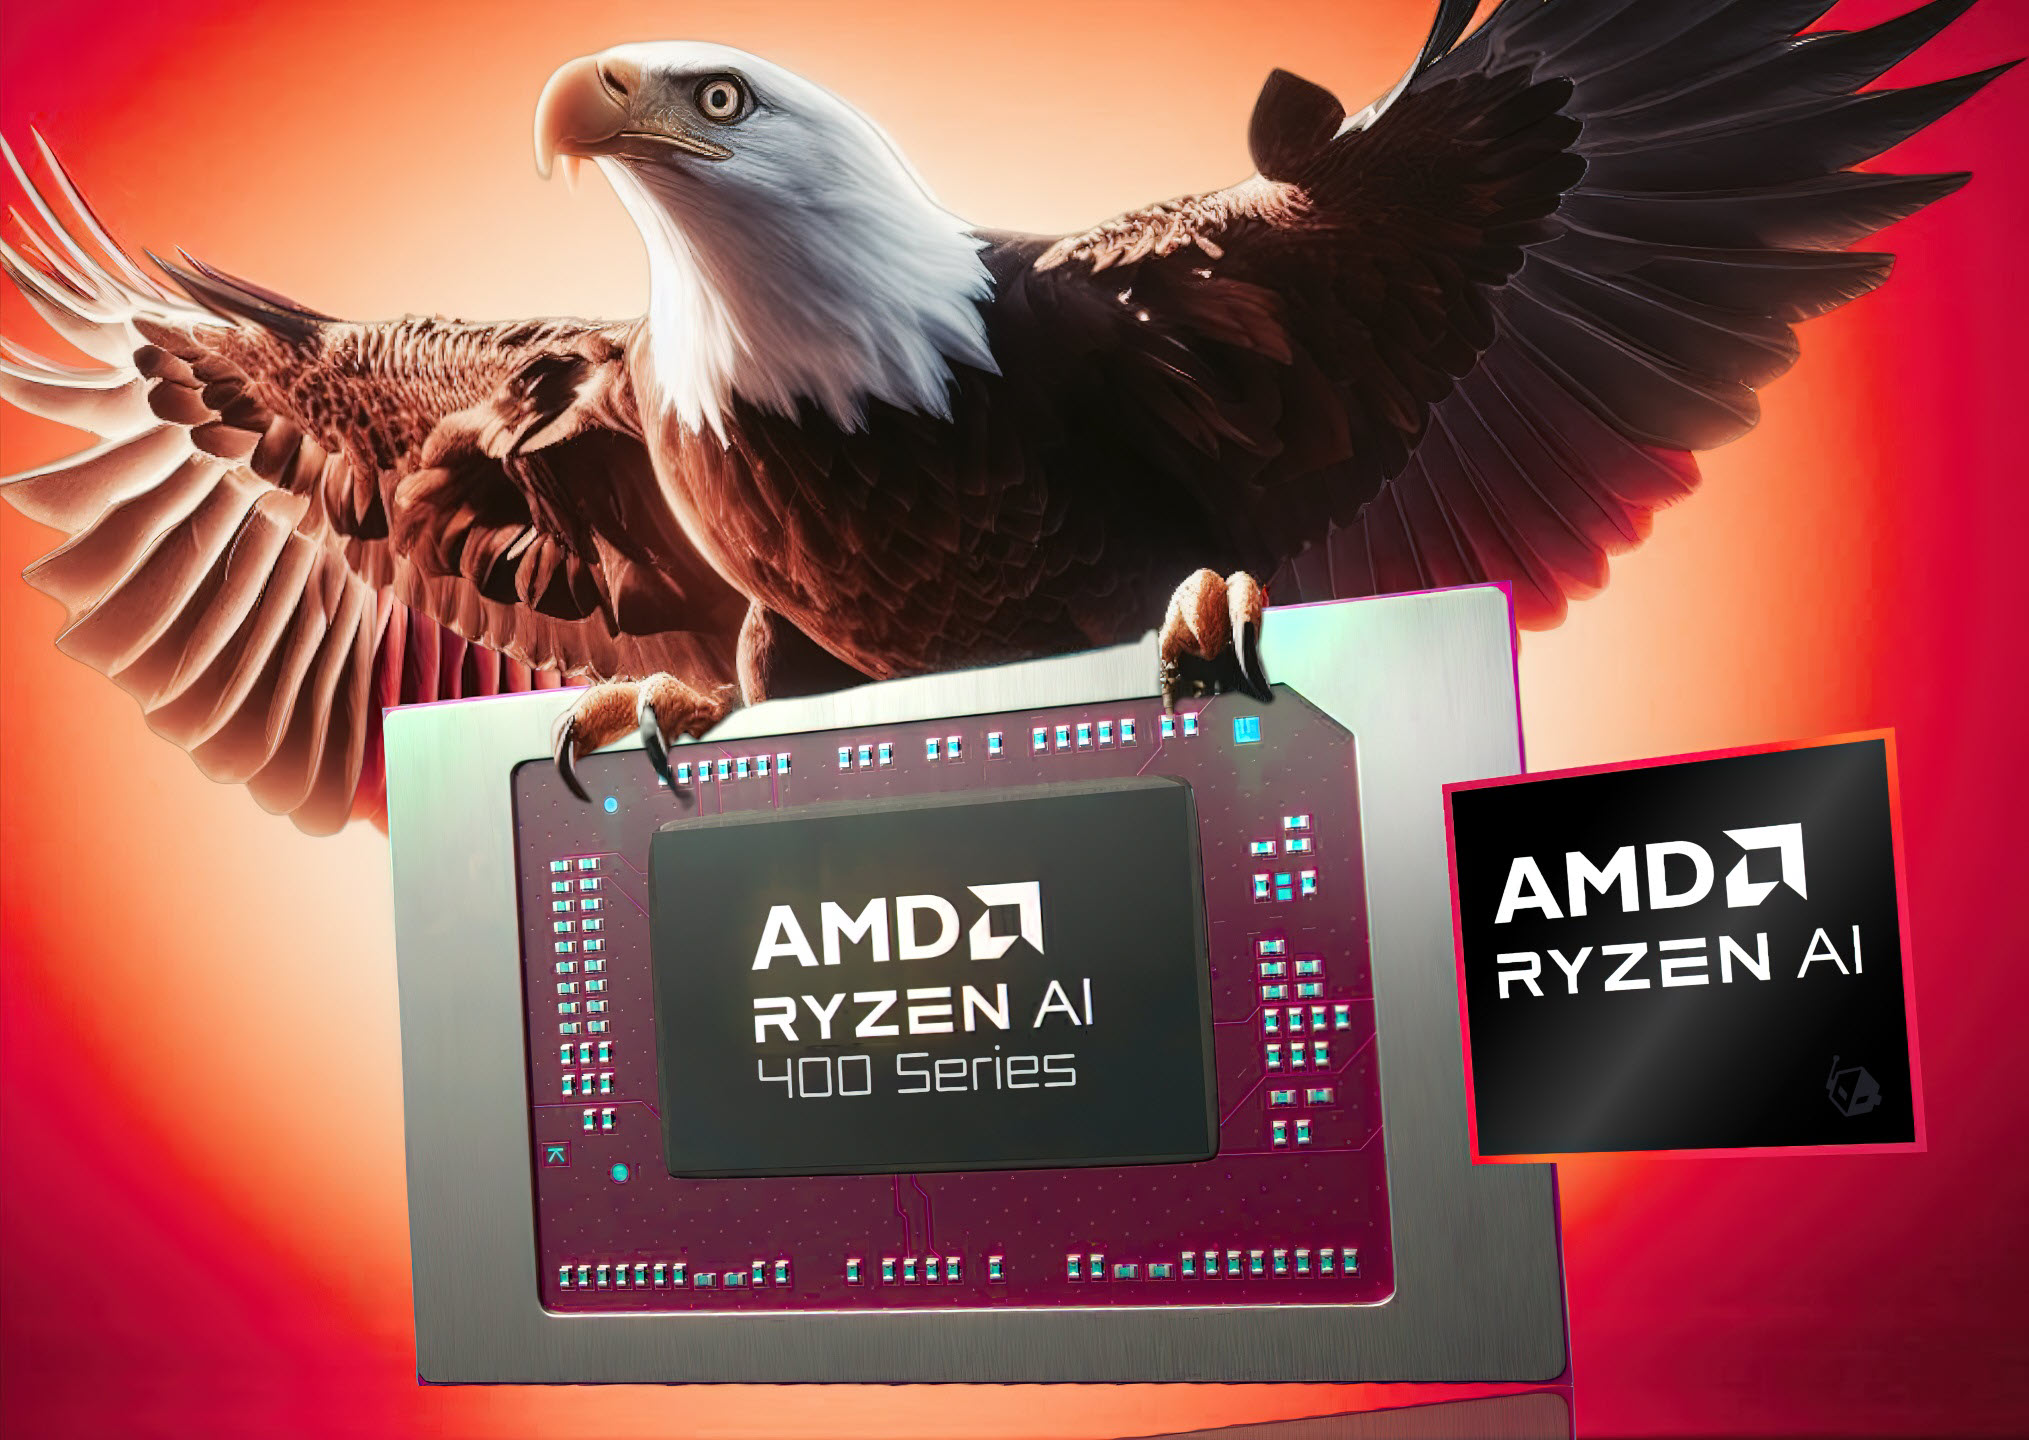 قرار بود AMD Bald Eagle Point “Ryzen AI” برای iGPU RDNA 3.5 Strix Refresh با حافظه کش افزایش یافته باشد.